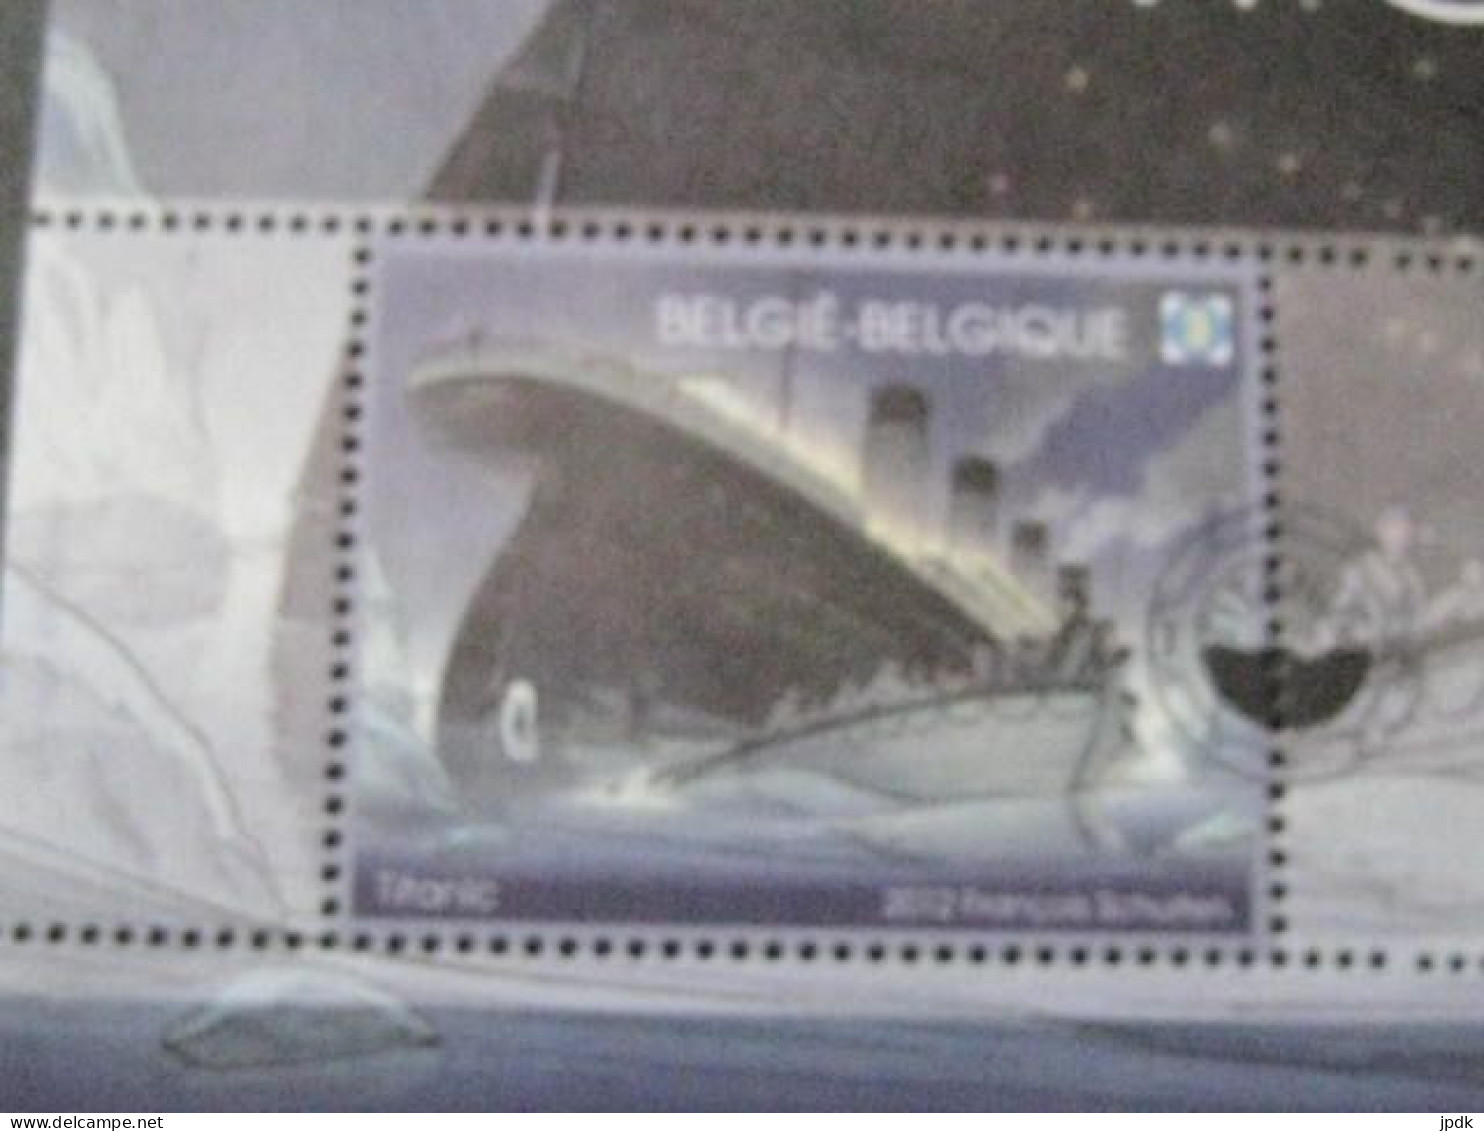 BL200** (2012) Titanic Avec Accessoires - 1991-2020